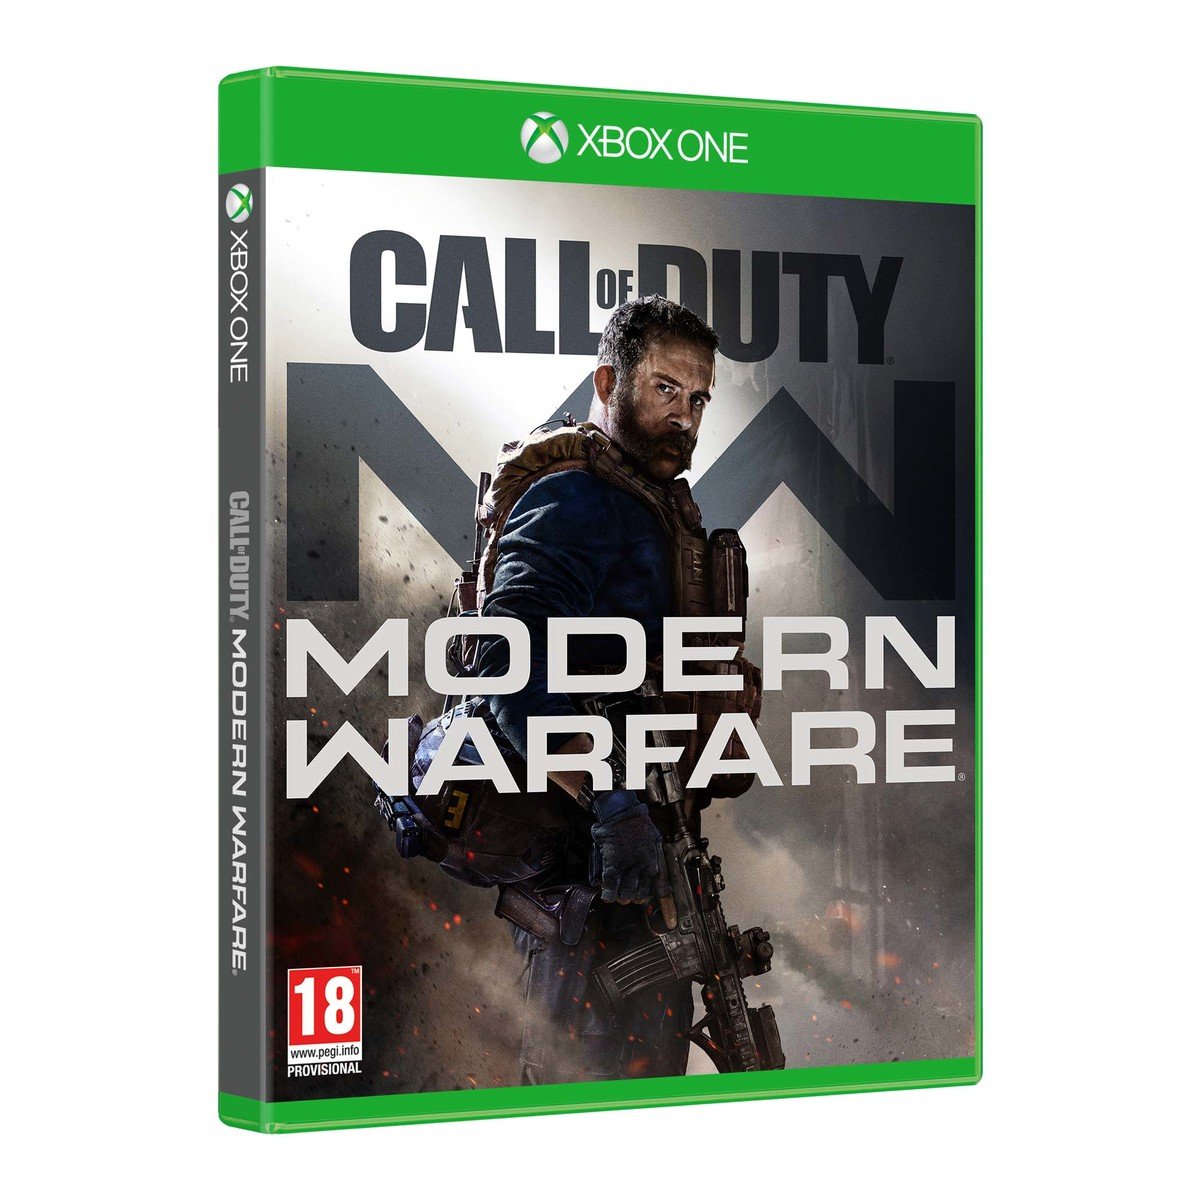 CallOfDuty-Modern Warfare Xbox One